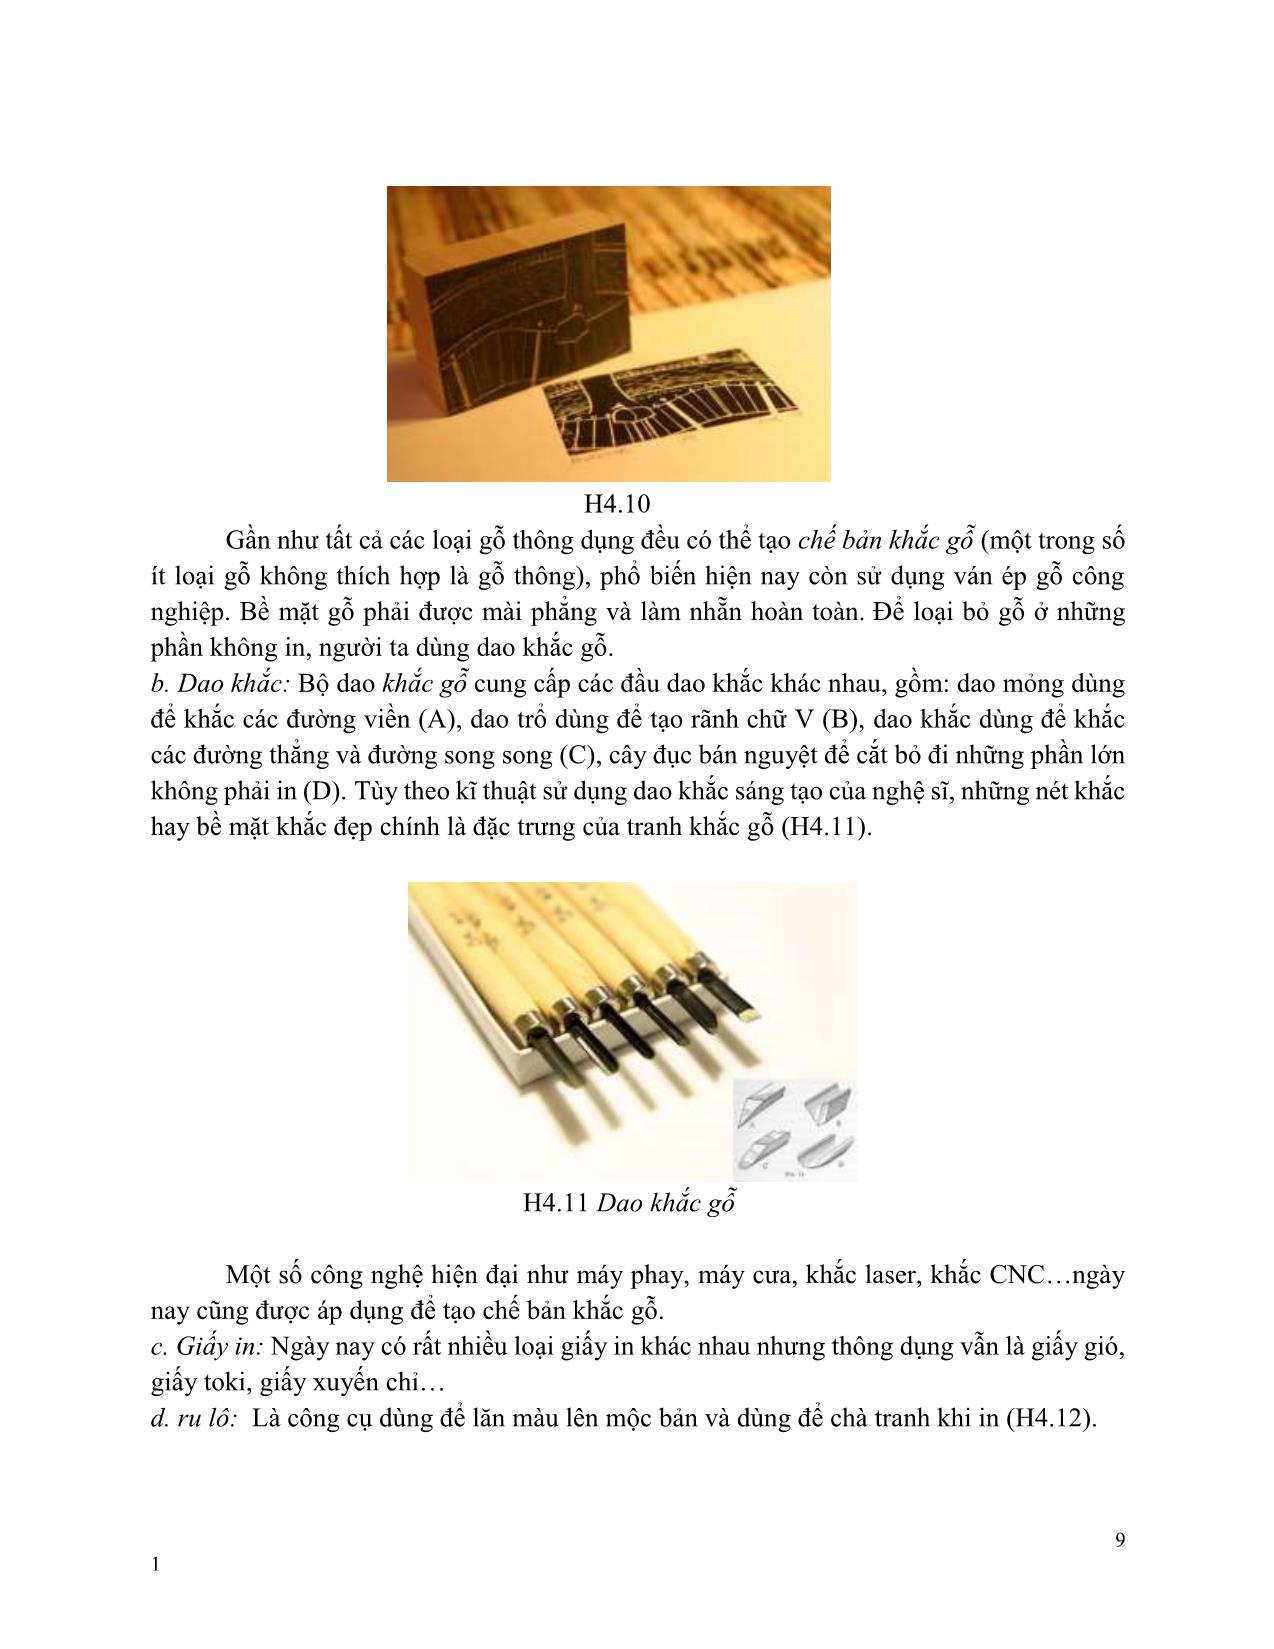 Giáo trình Hội họa - Vẽ bố cục chất liệu khắc gỗ trang 9